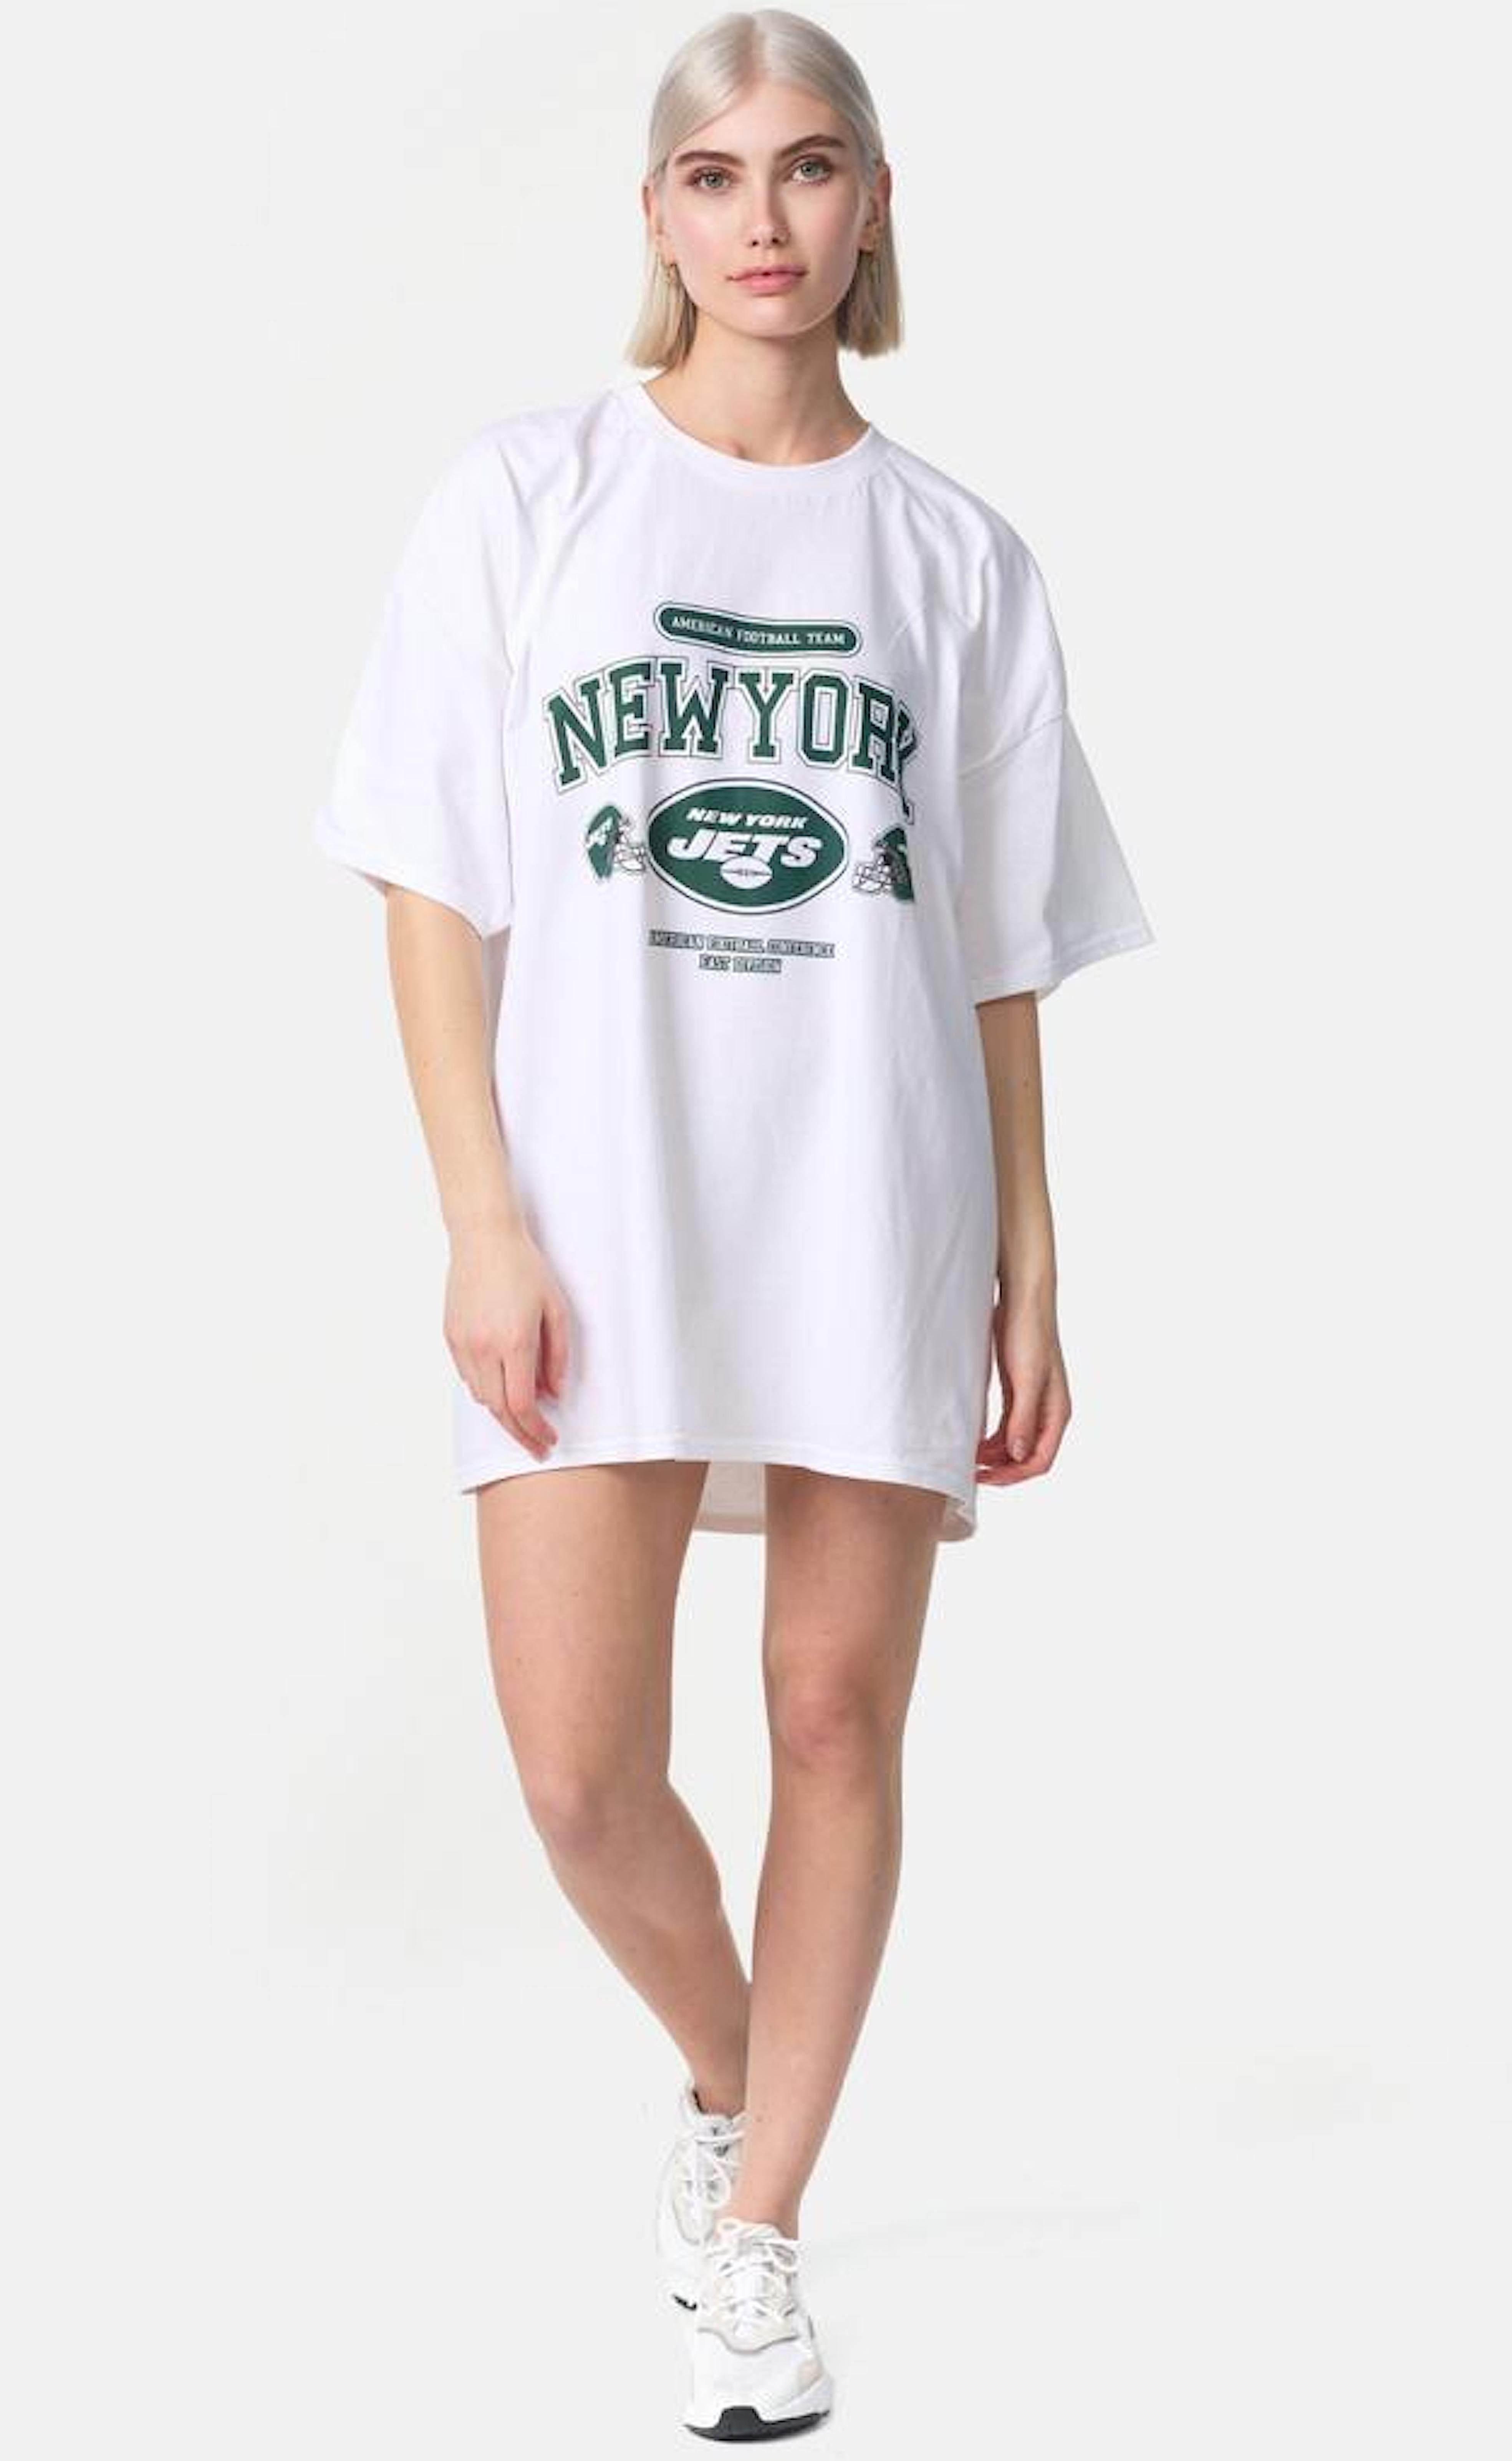 Worldclassca T-Shirt NEW Tee YORK lang Print Worldclassca Weiß Oversized Oberteil T-Shirt Sommer